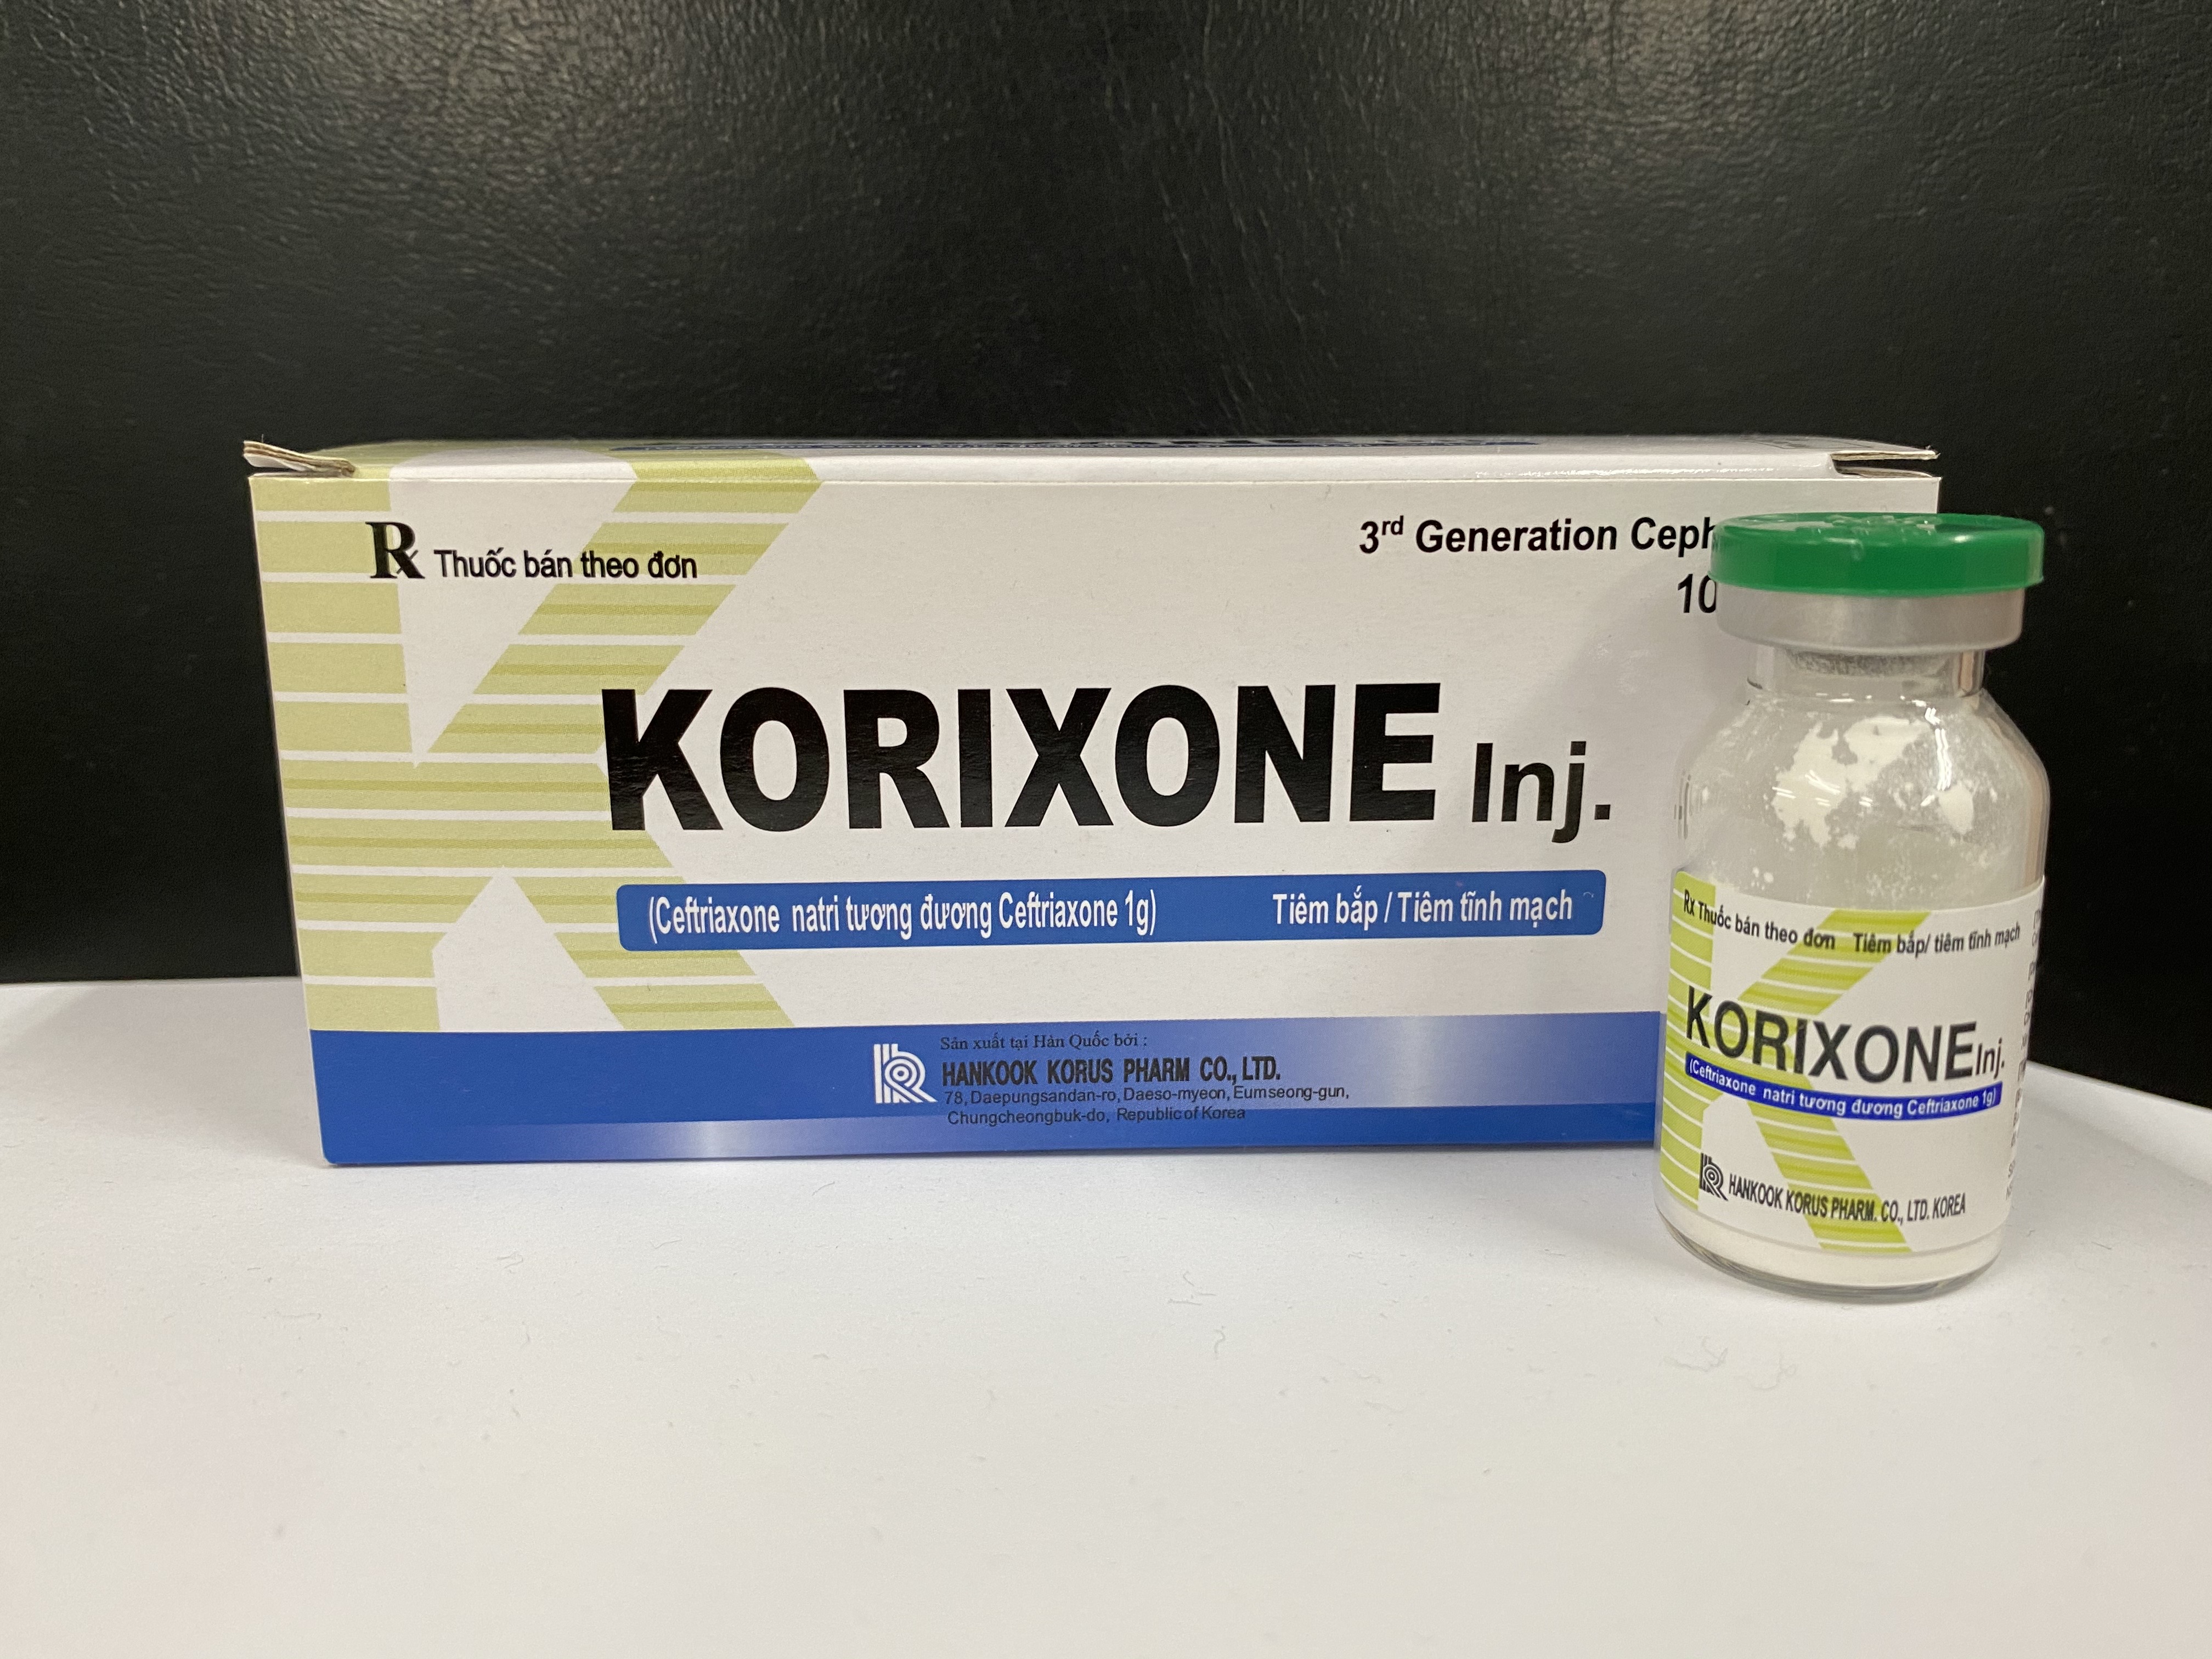 Korixone Injection